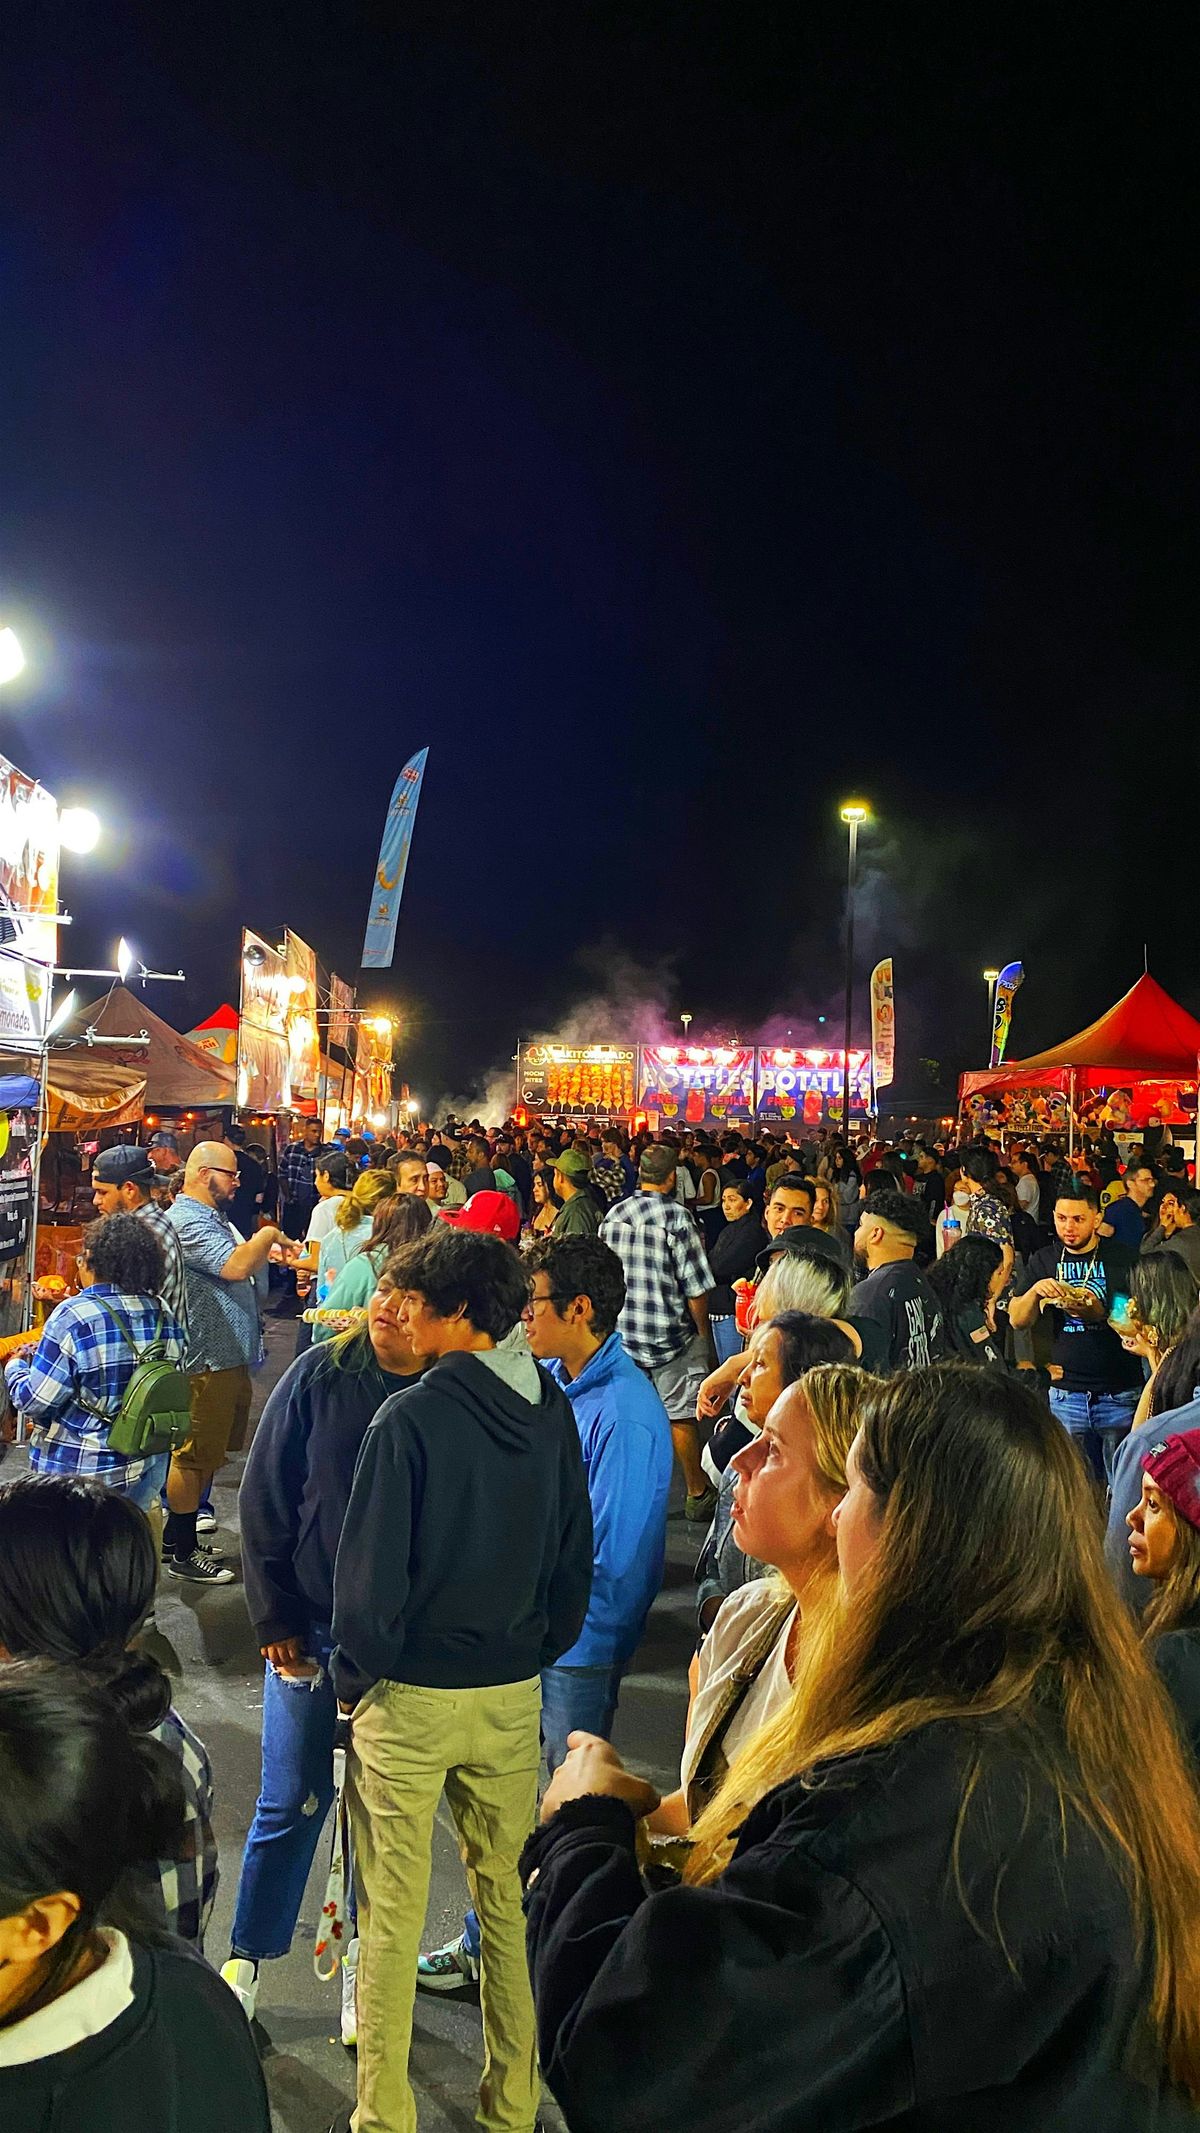 805 Night Market: Ventura, Sep 14-15